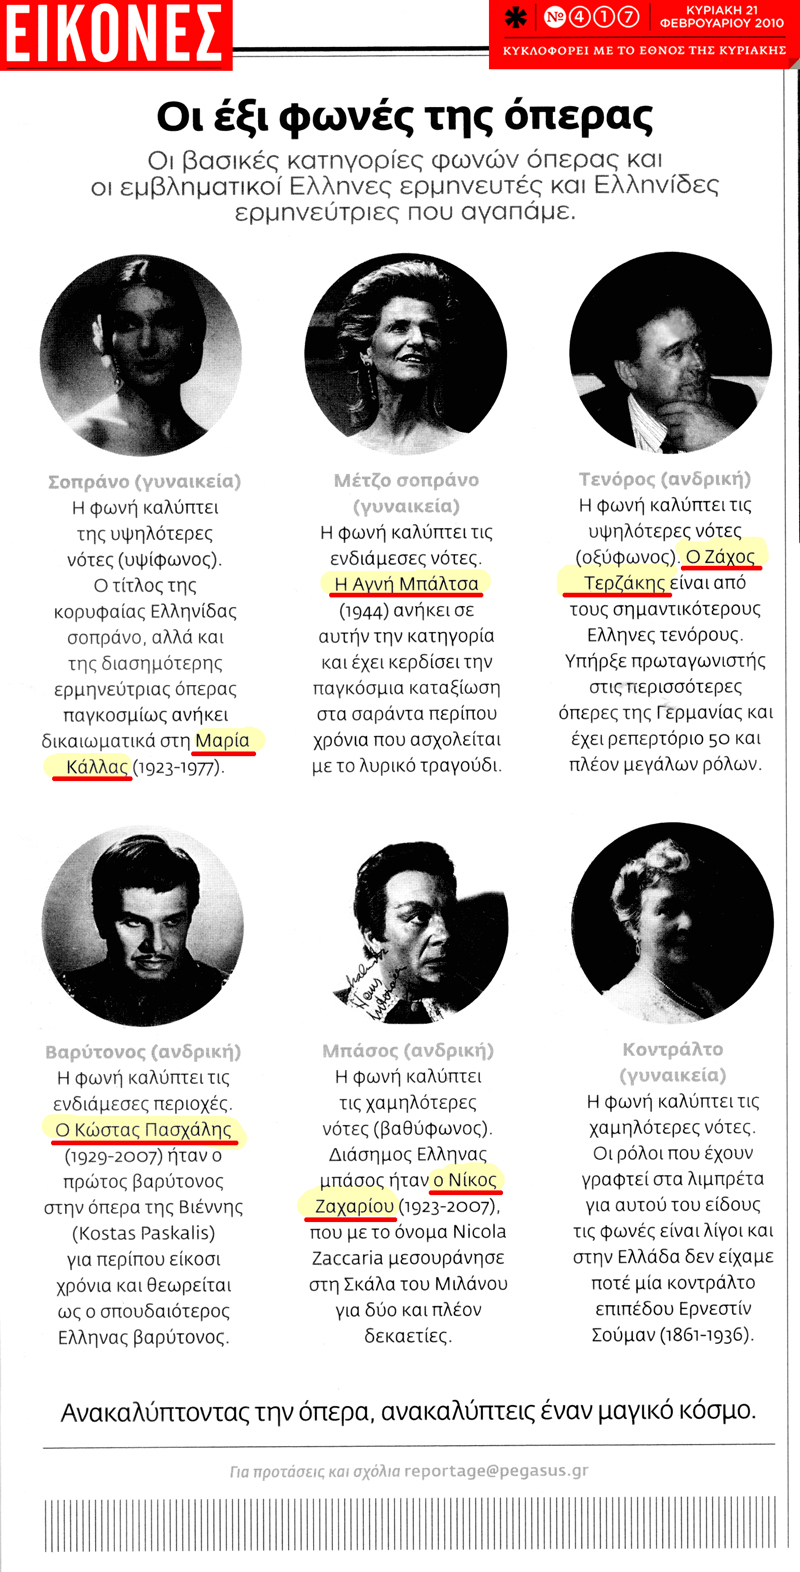 Aus dem Magazin BILDER der Griechische Zeitung ETHNOS AM SONNTAG